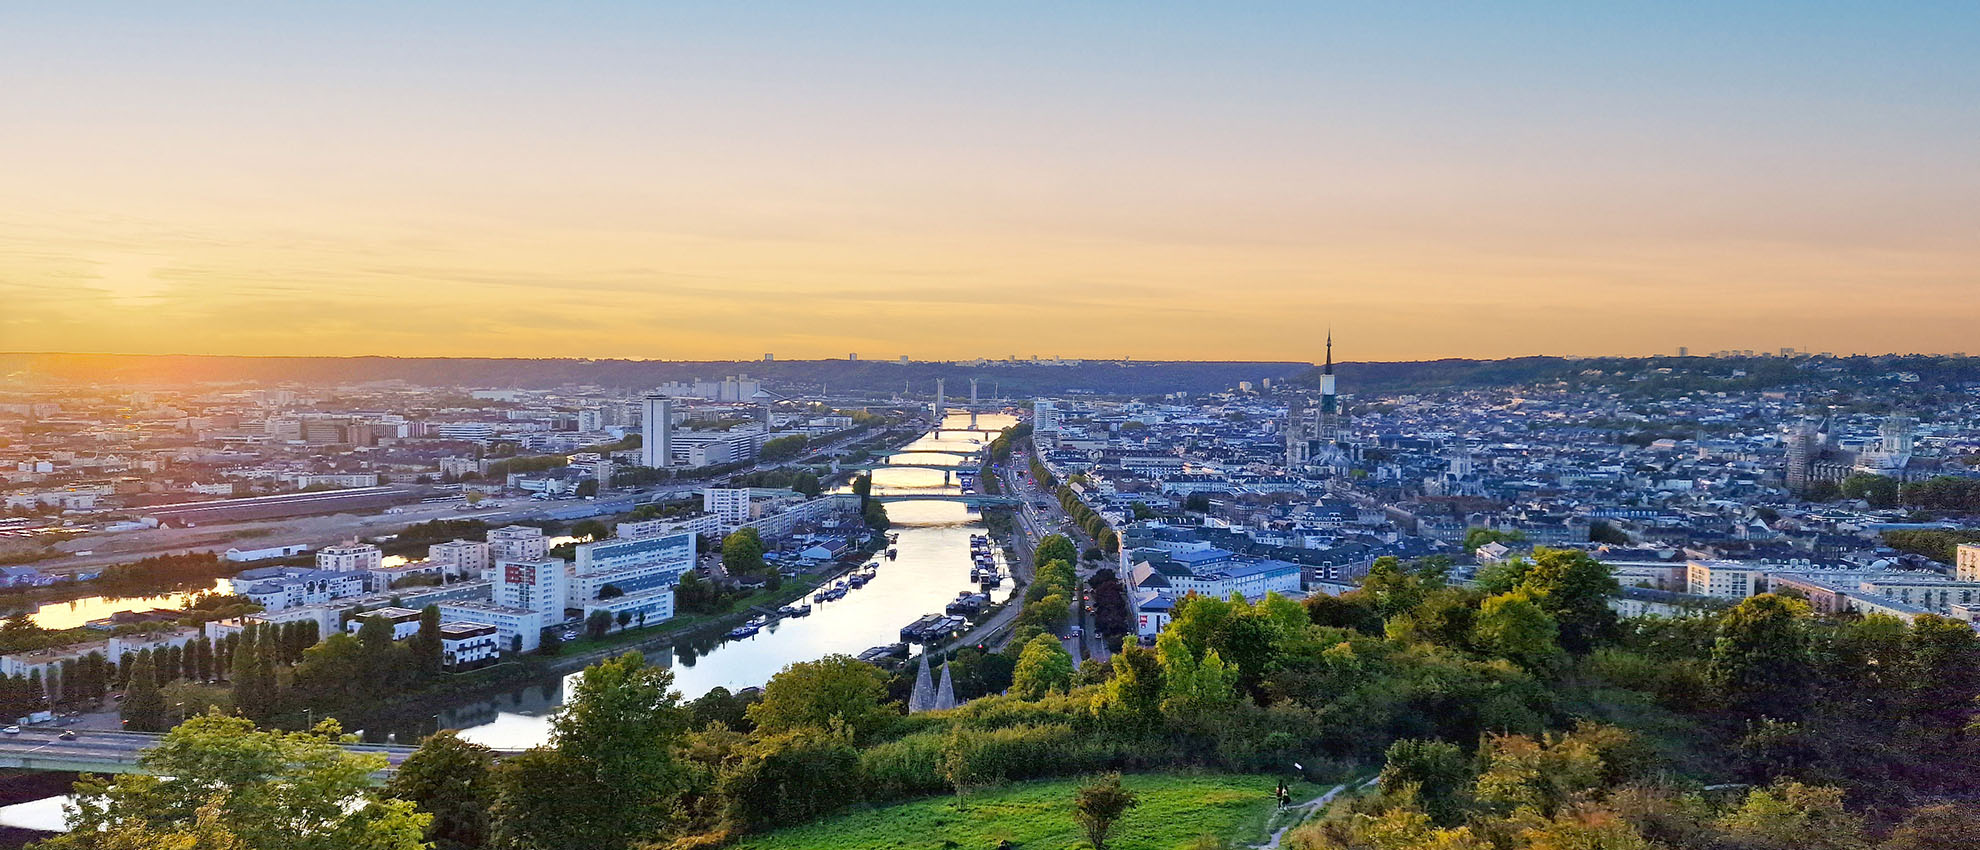 Les assises nationales du Fleuve se tiendront à Rouen les 3 et 4 octobre prochain